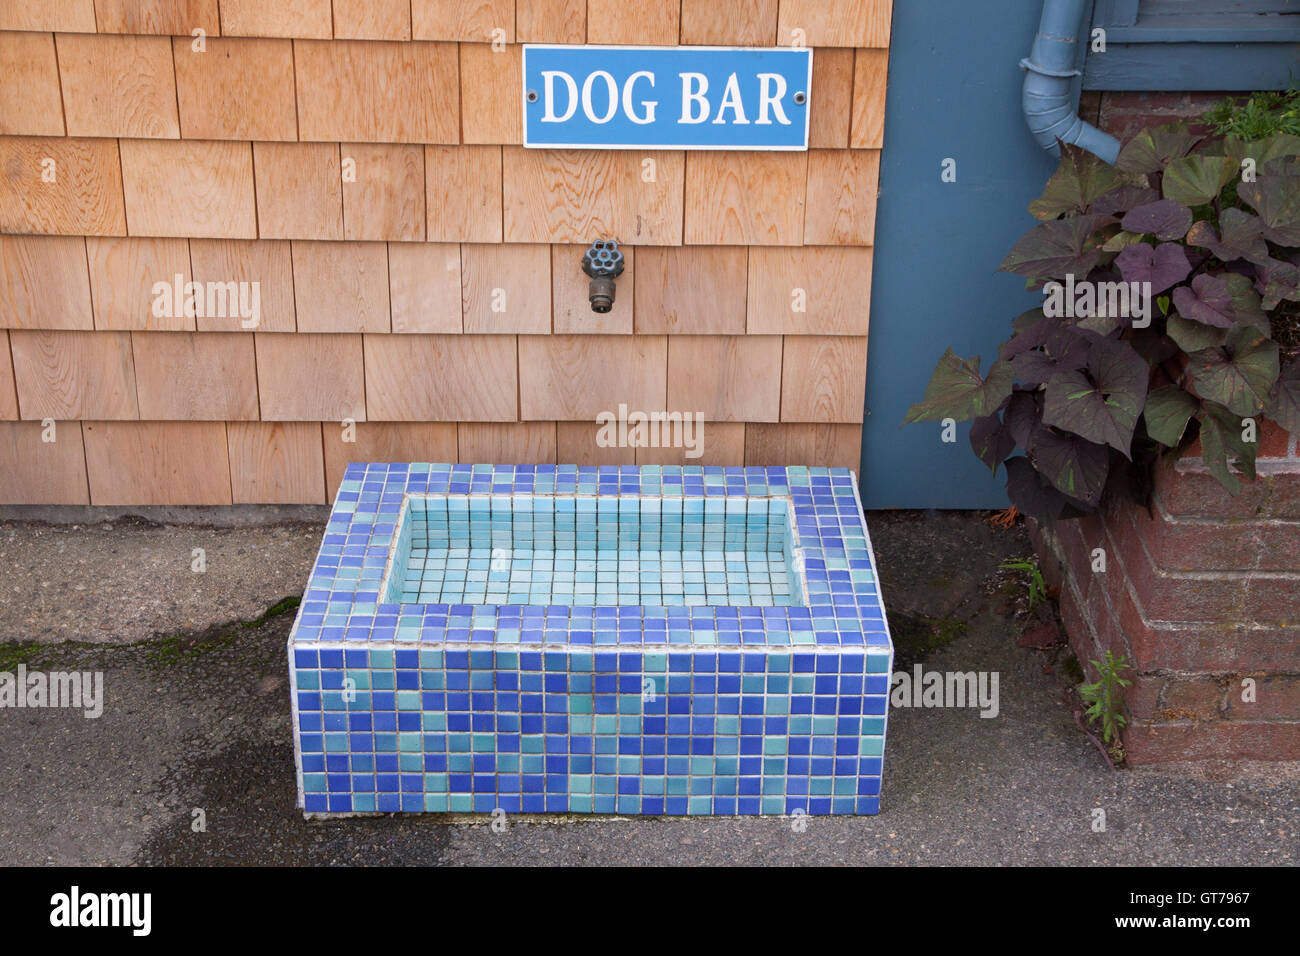 Dog bar firmar fuera de un restaurante que ofrece una fuente de agua a los sedientos perros. Foto de stock